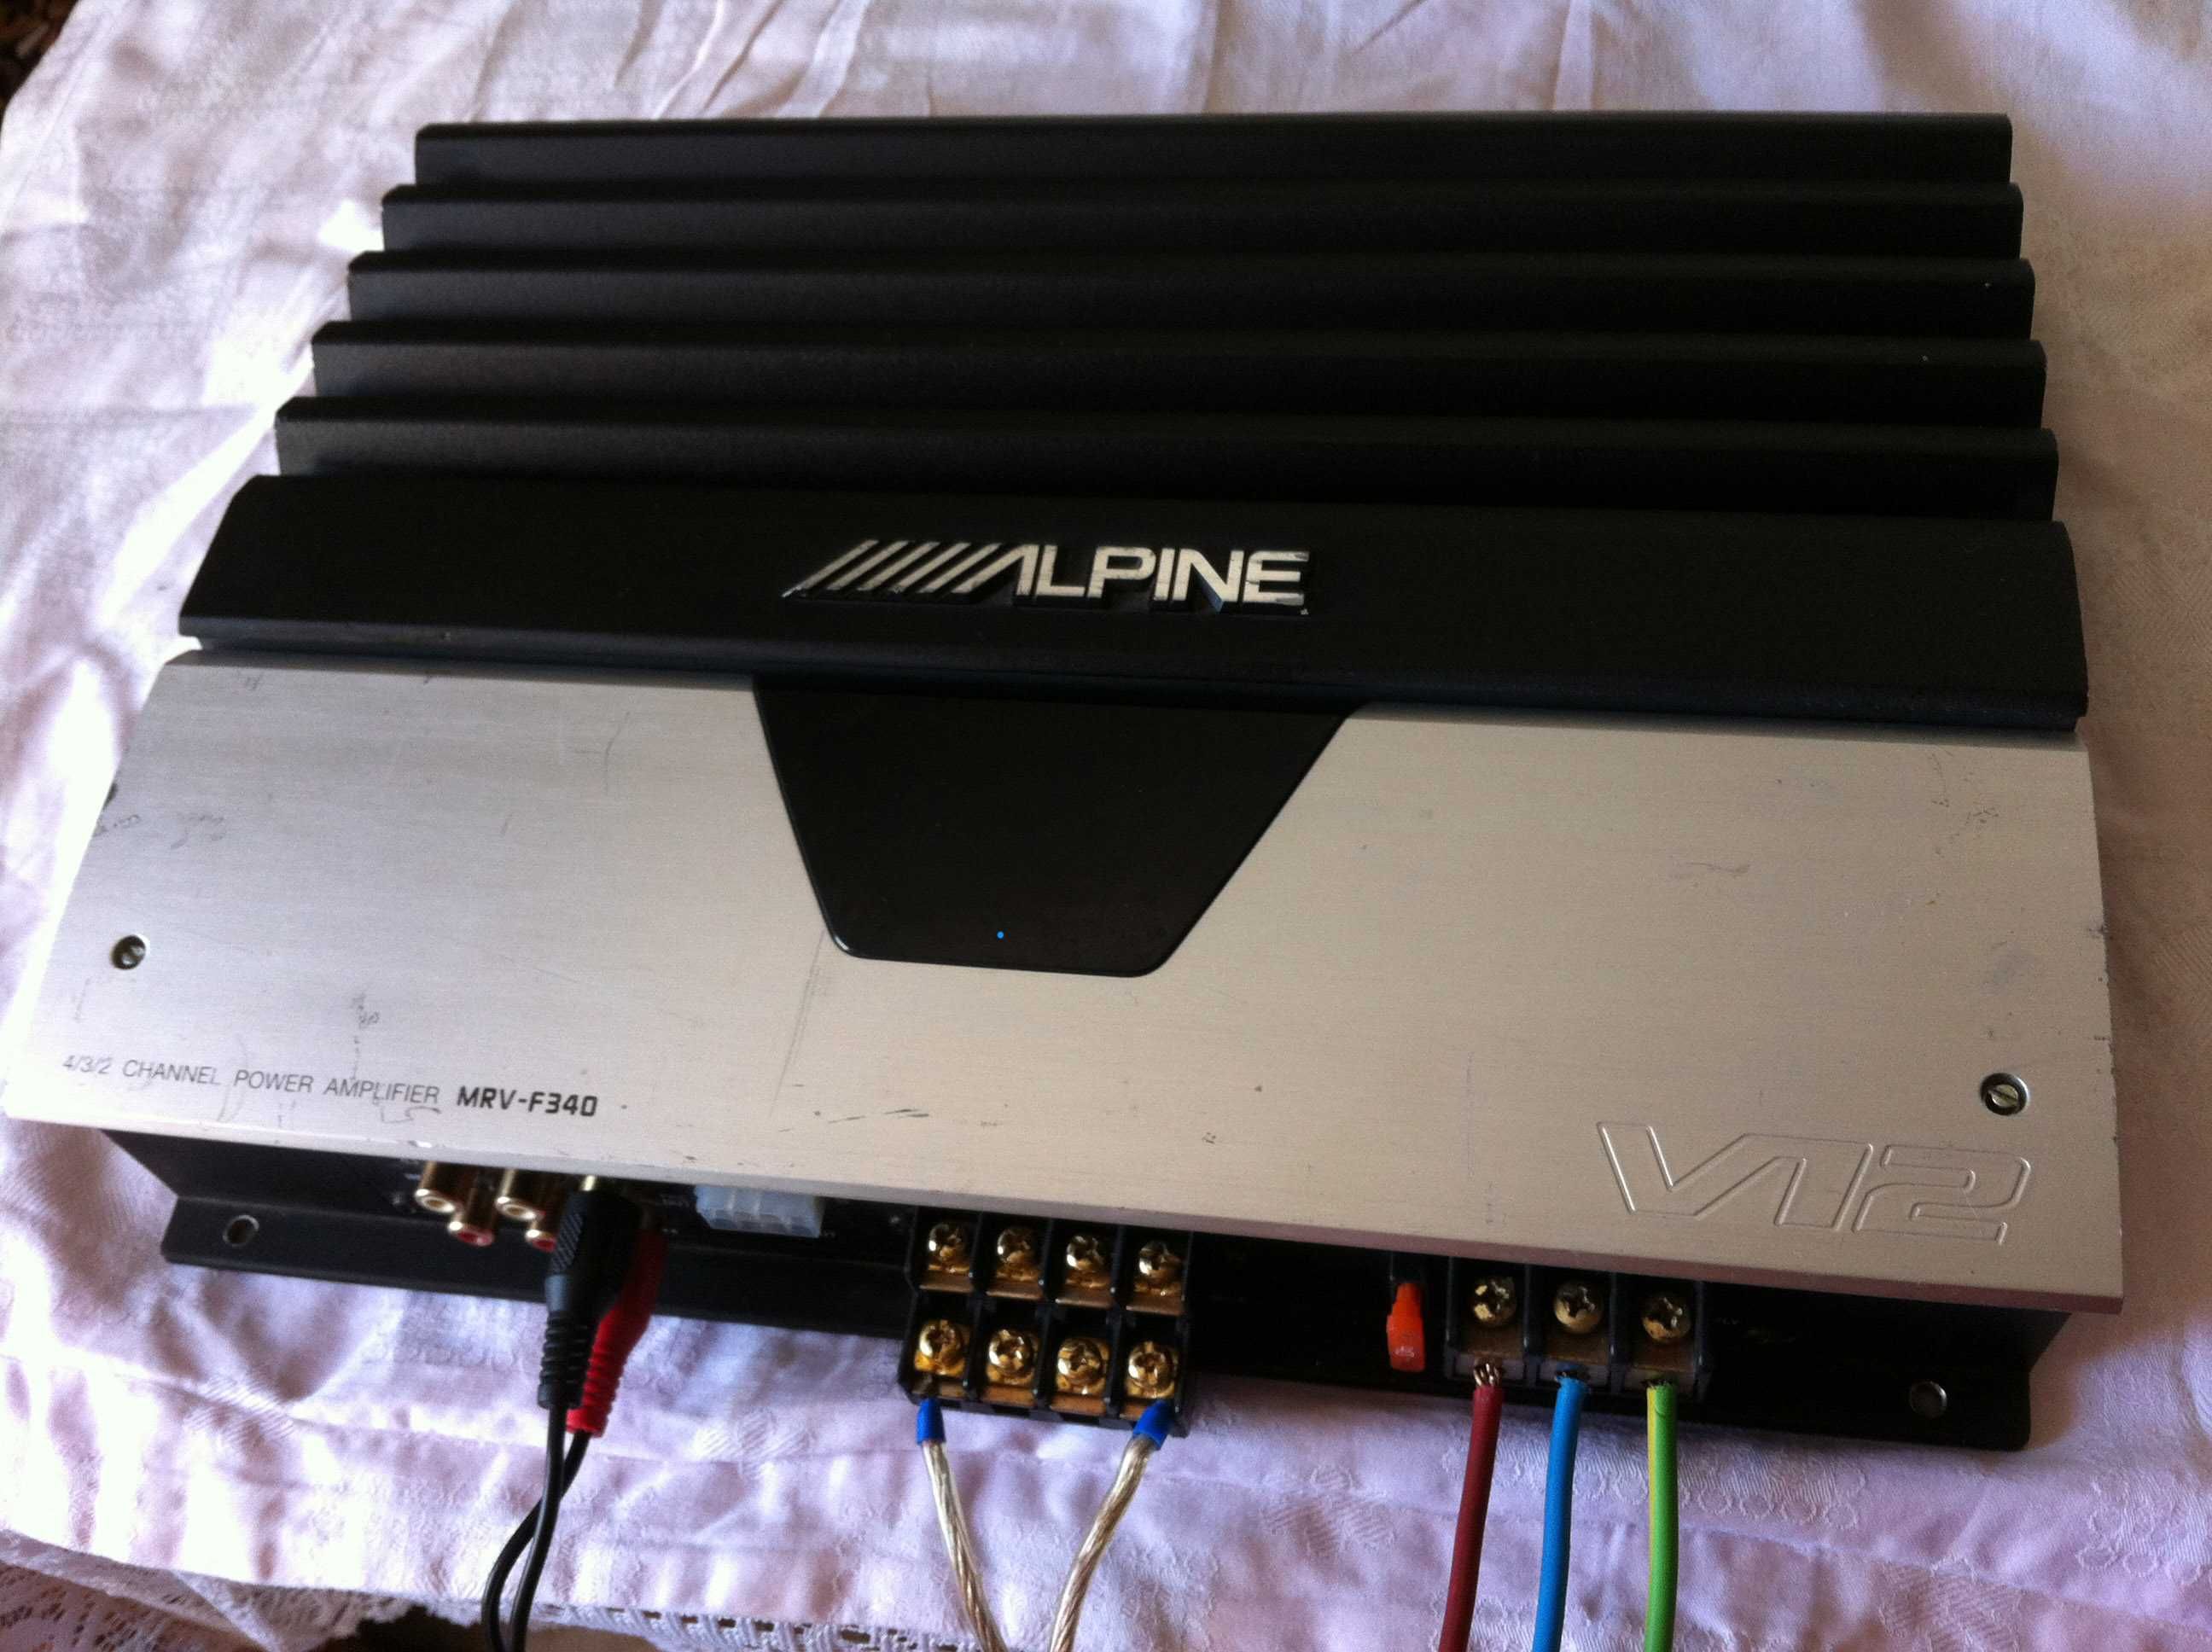 Amplificator Alpine max 1000W hertz focal audison pioneer statie